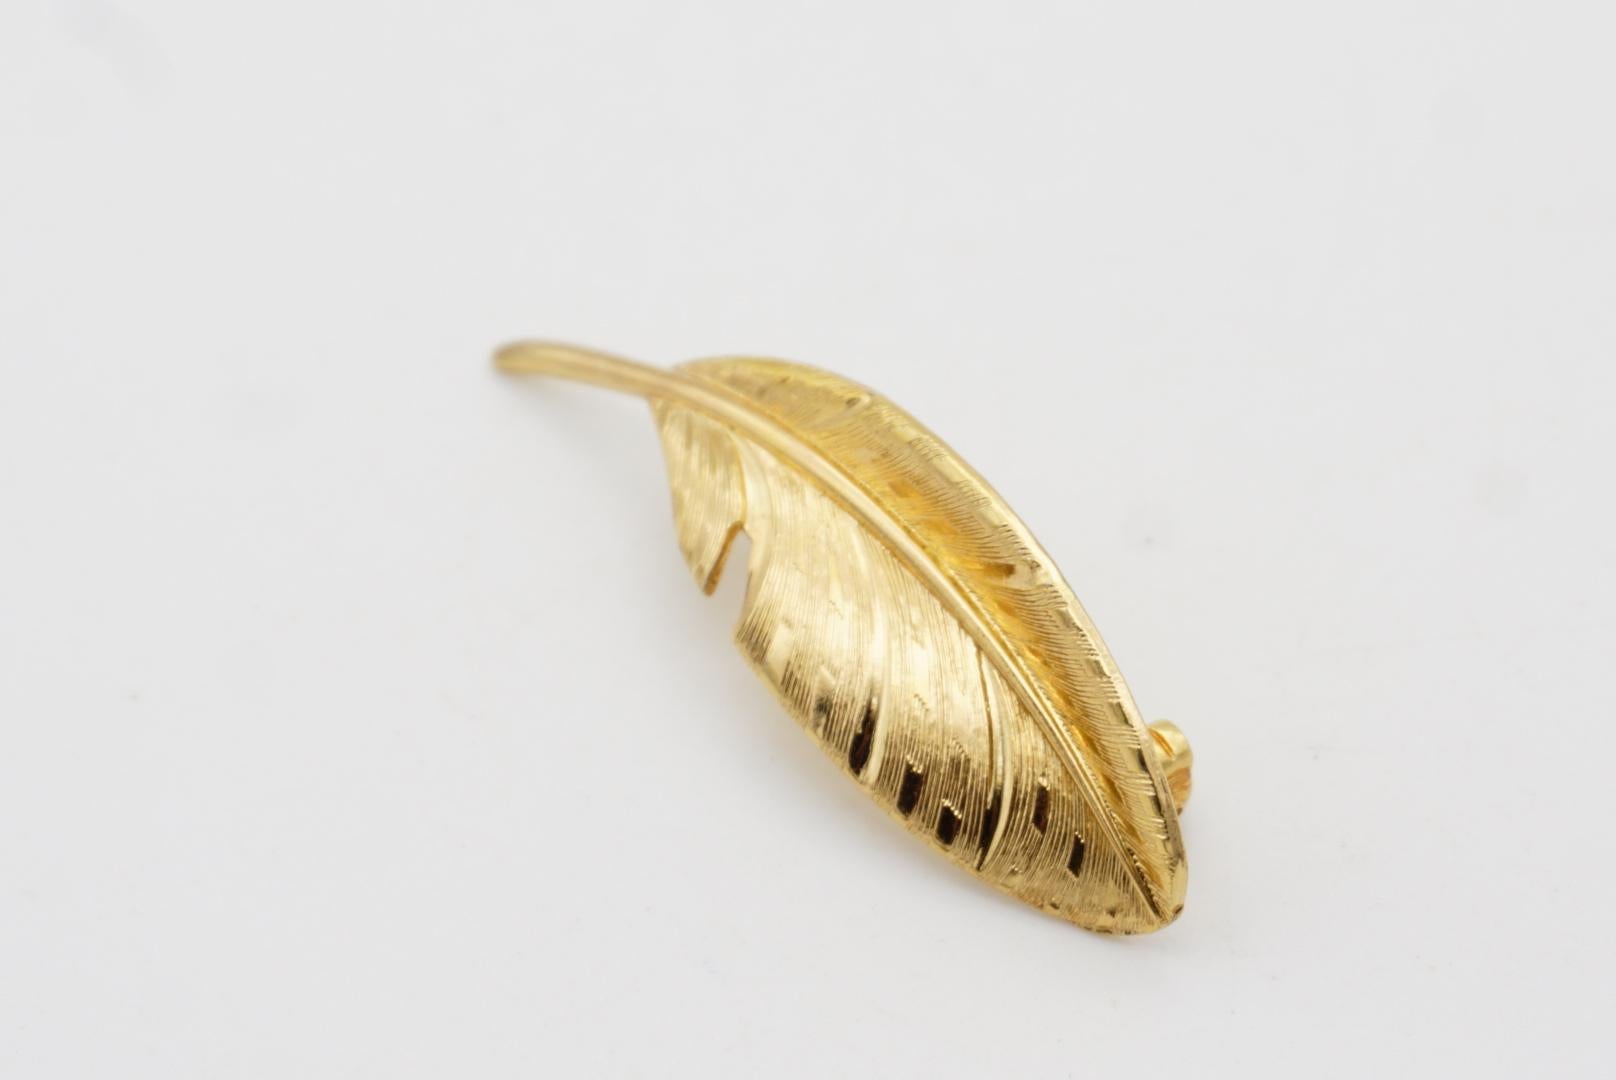 Christian Dior GROSSE 1963 Vintage Vivid Modernist Long Leaf Palm Gold Brooch  For Sale 7